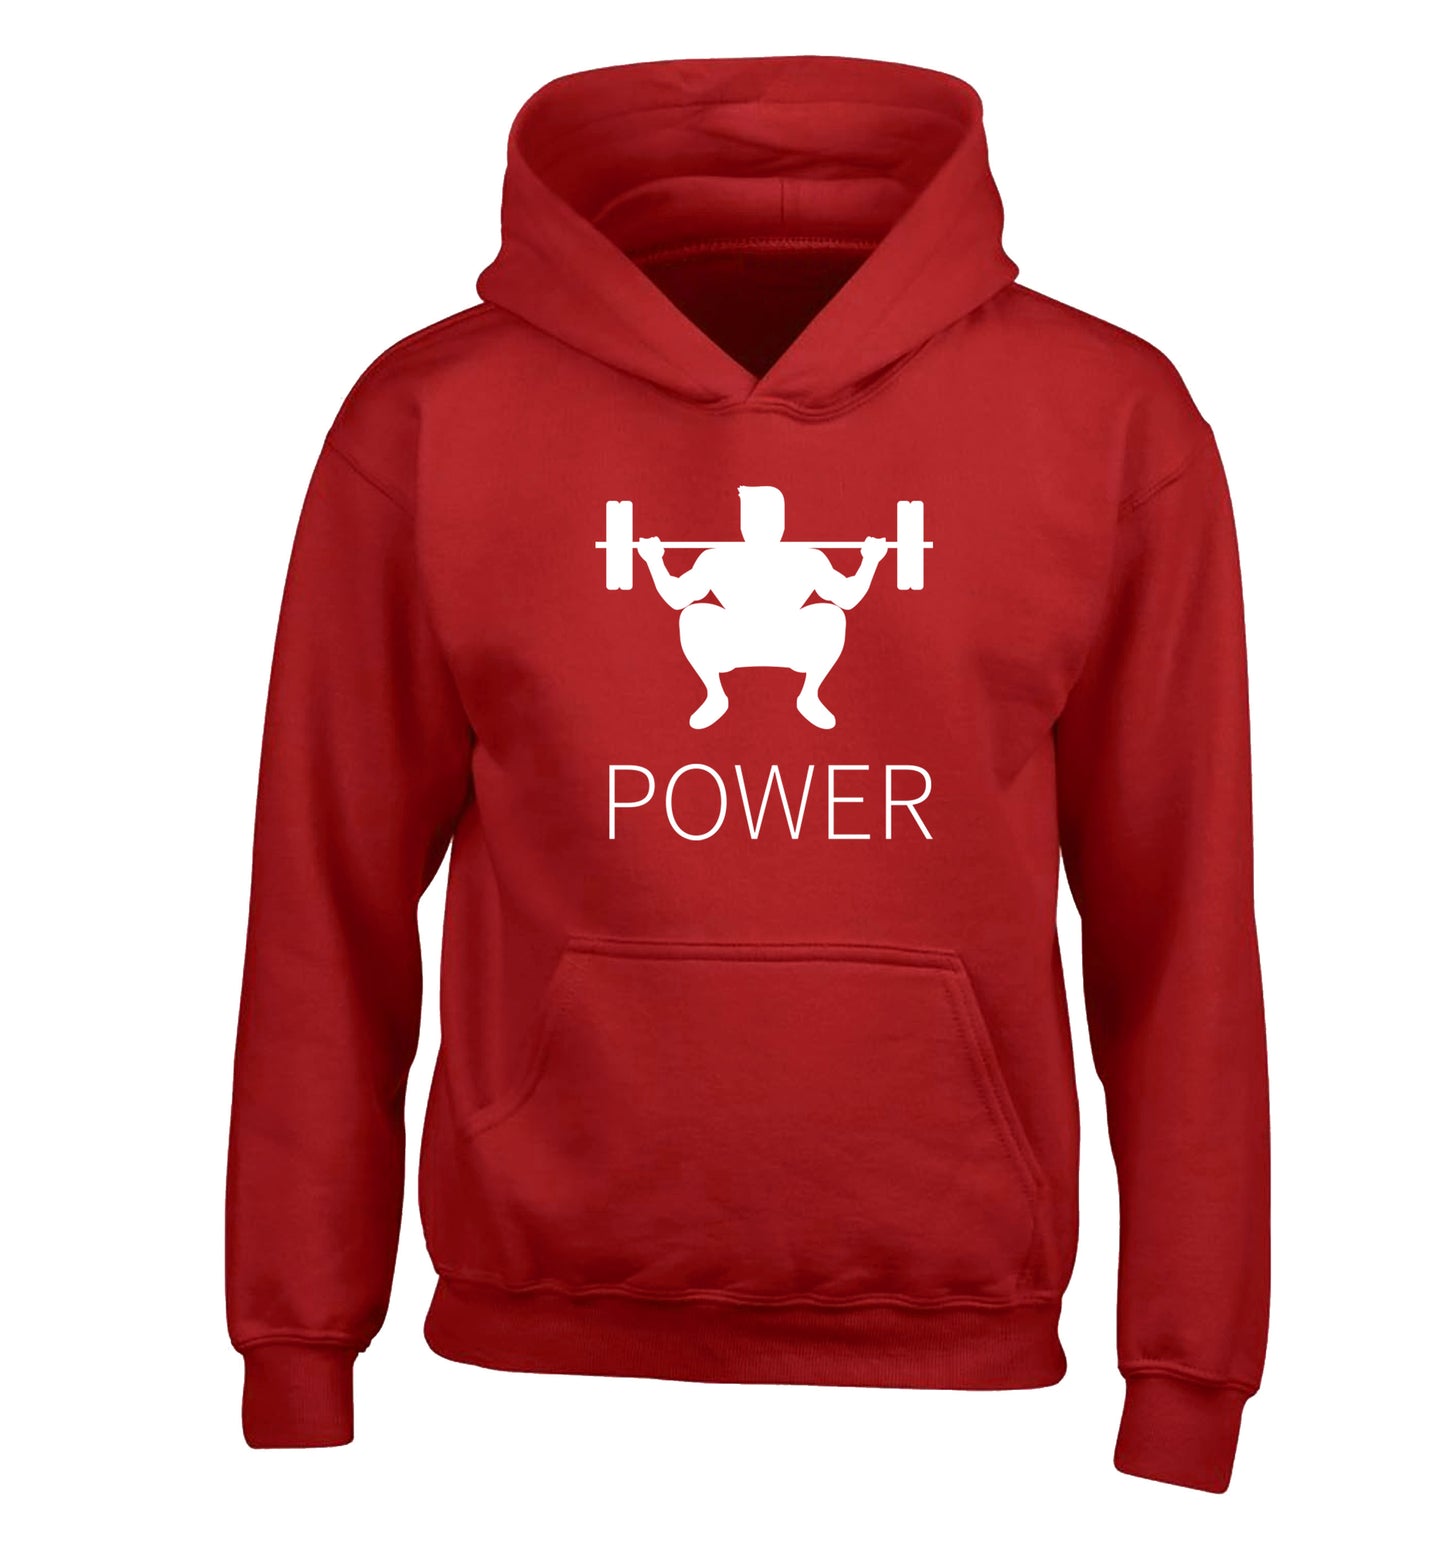 Lift power children's red hoodie 12-13 Years